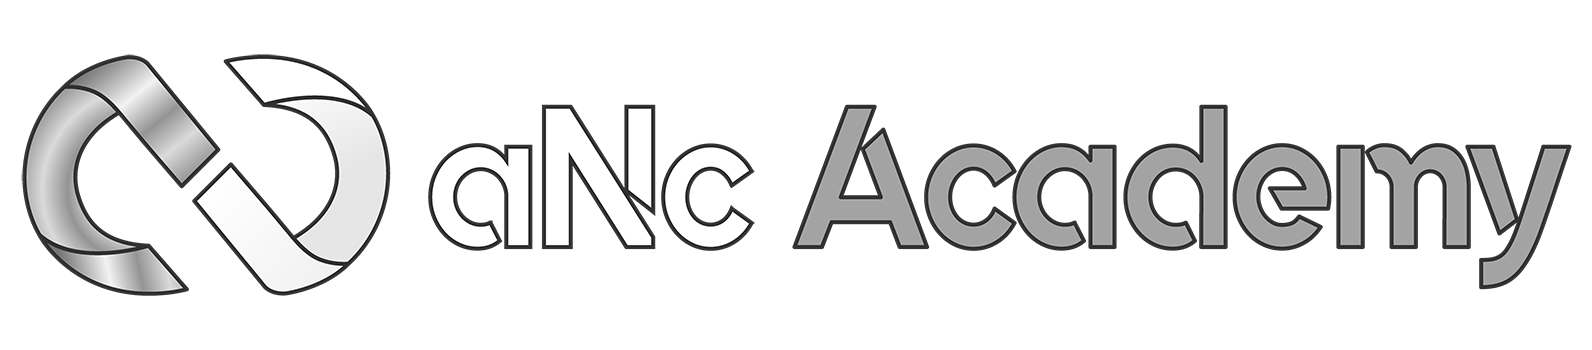 aNc Academy